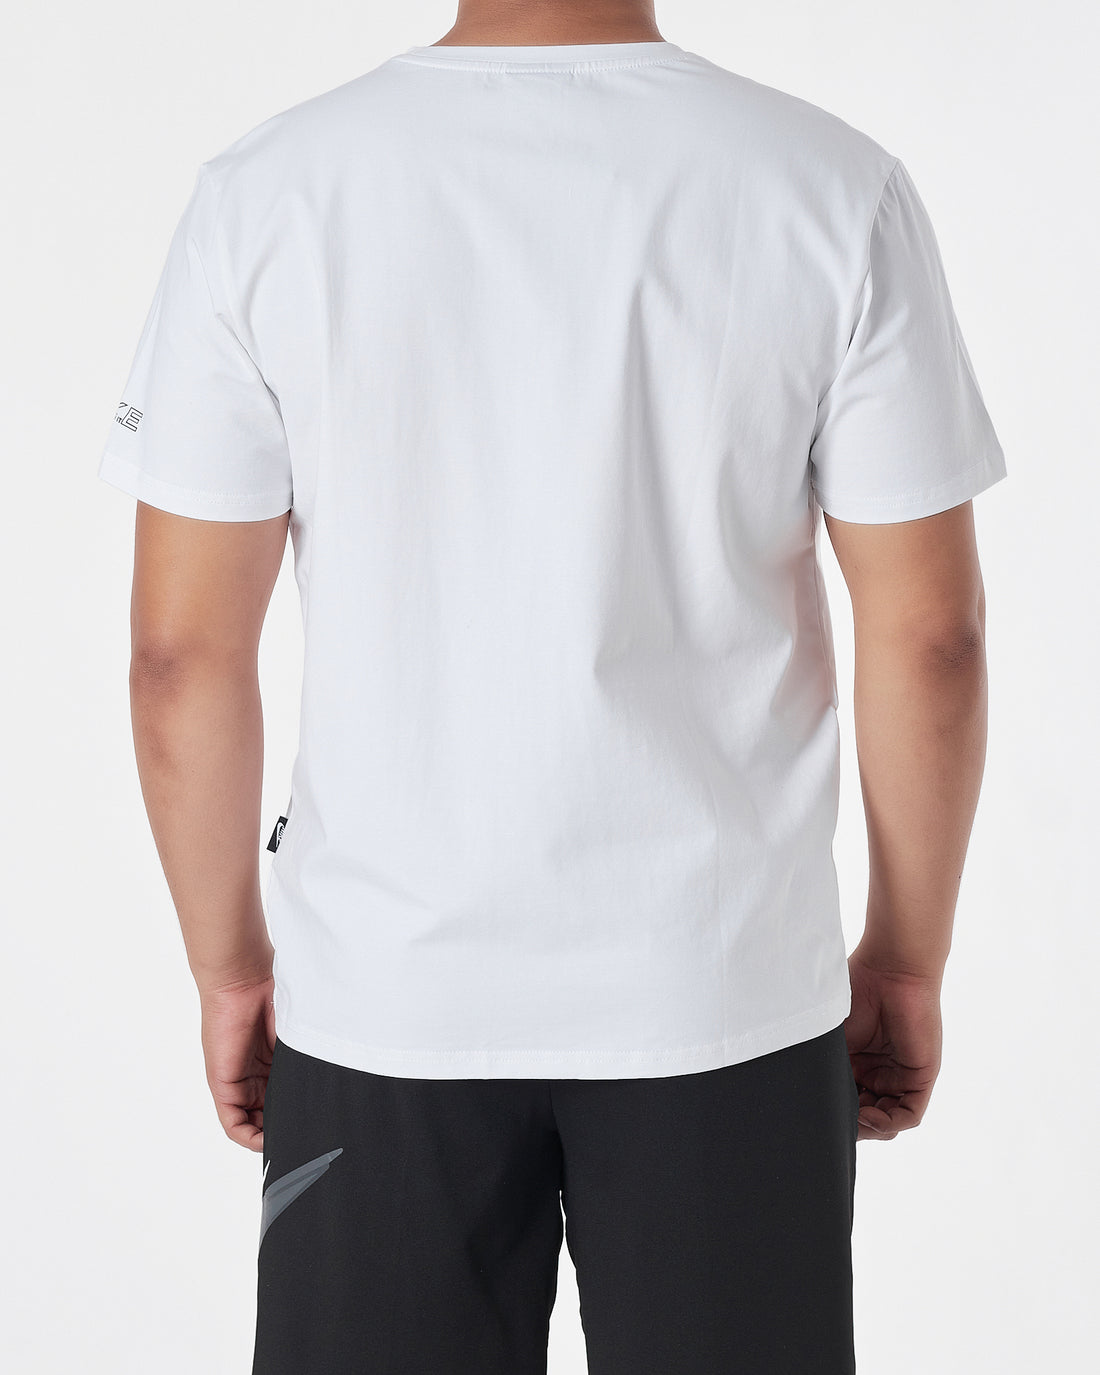 NIK Just Do It Logo Ptinted Men White T-Shirt 13.90